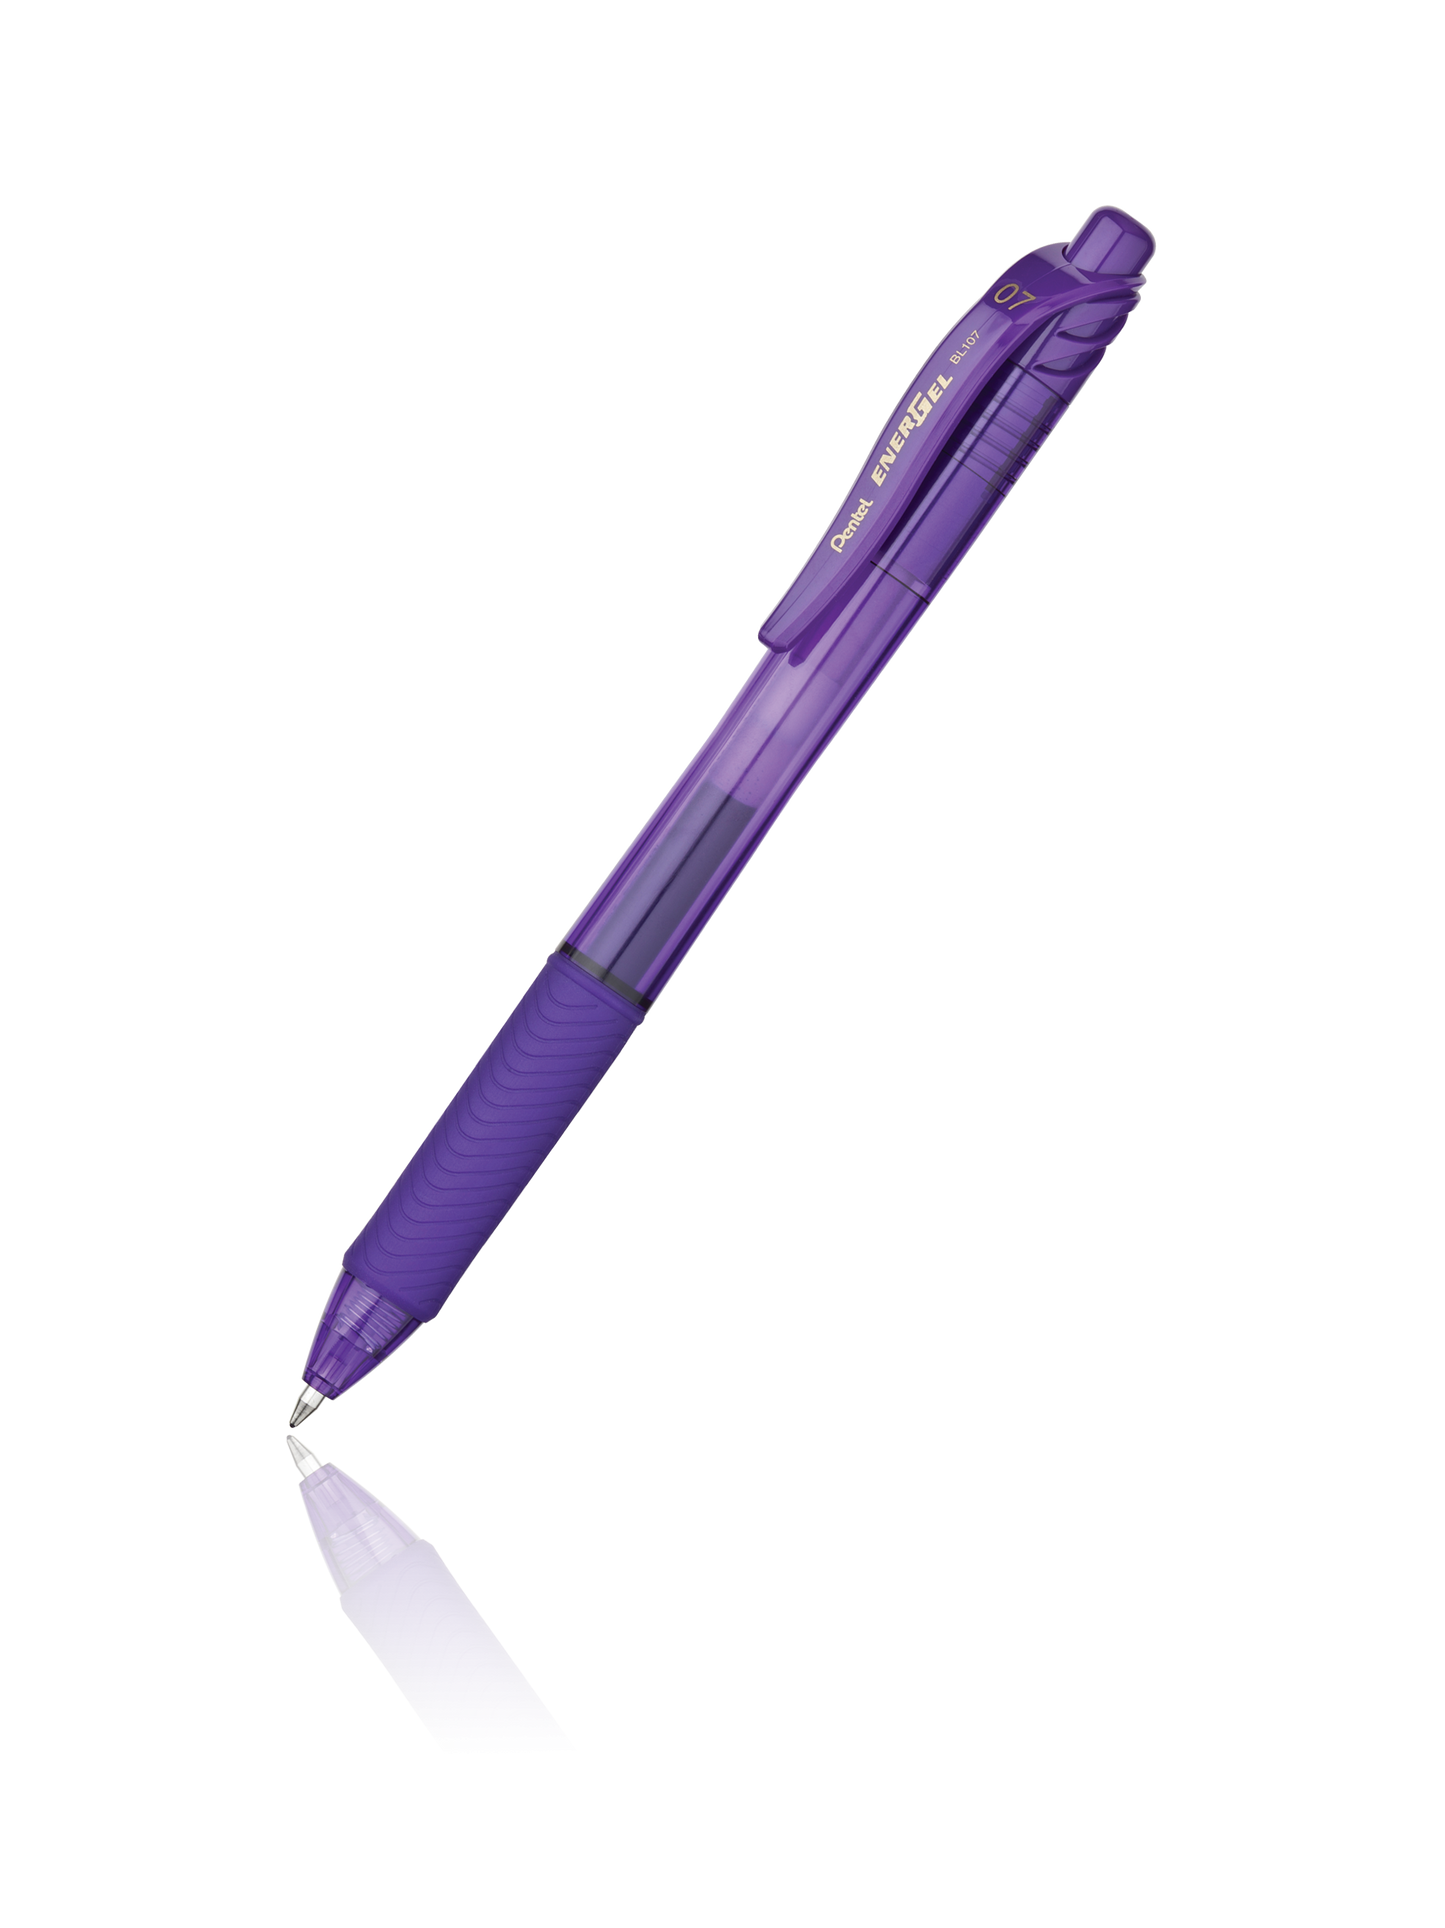 EnerGel-X stylo rétractable à encre gel lisse (0,7 mm), 2 unités, noir –  Pentel : Instruments d'écriture